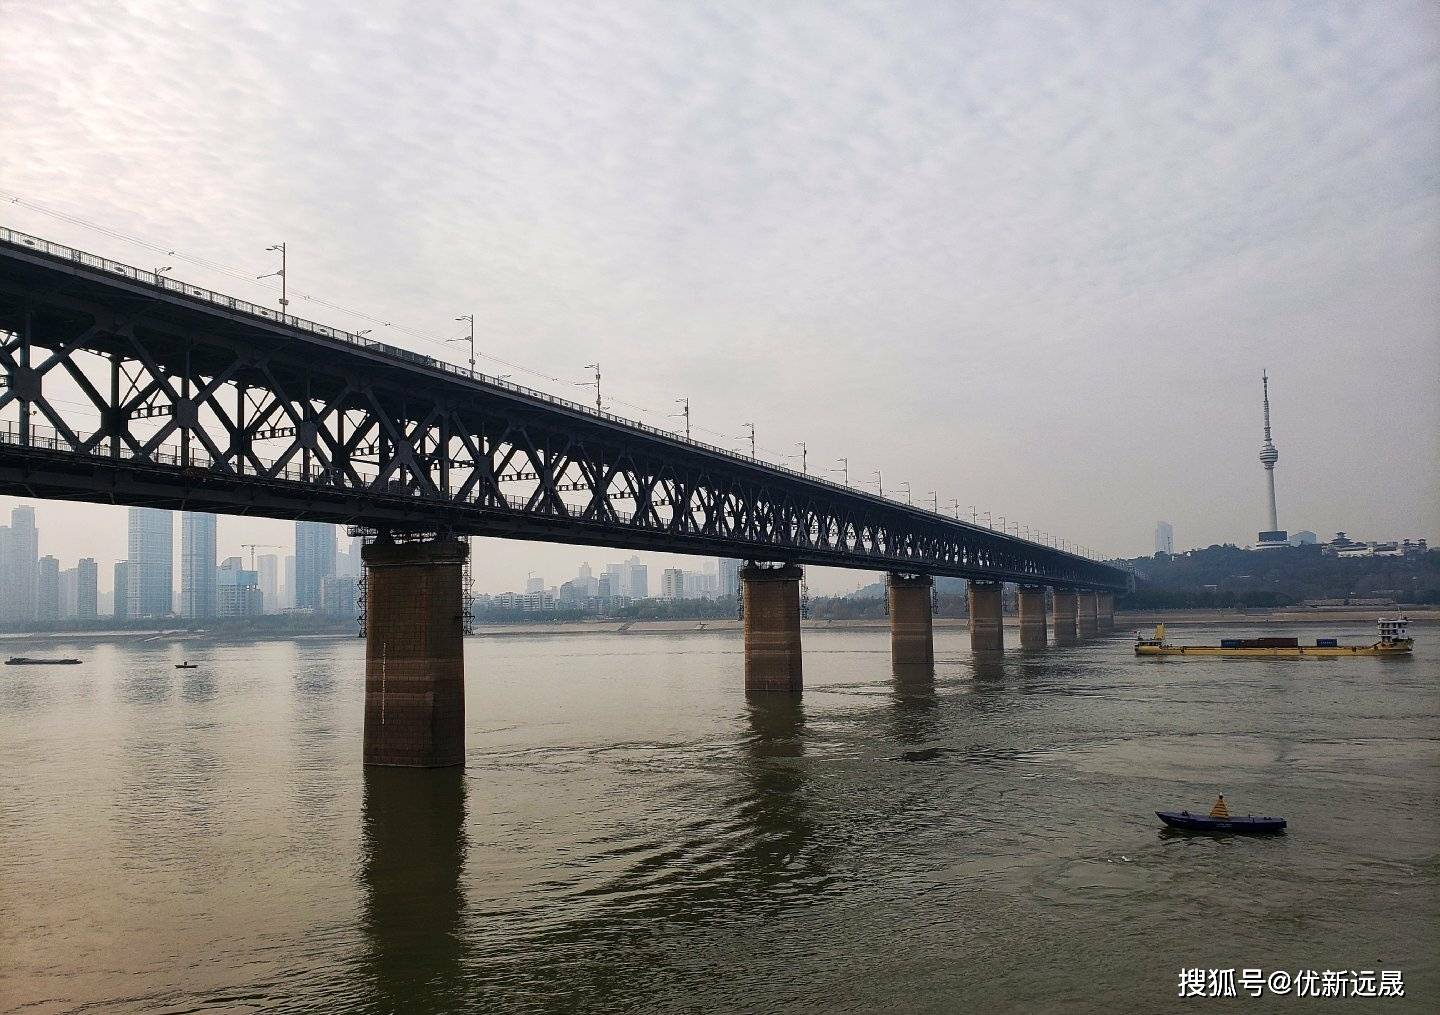 优新远晟传媒带你走进武汉长江大桥，感受下万里长江第一桥的宏伟壮丽